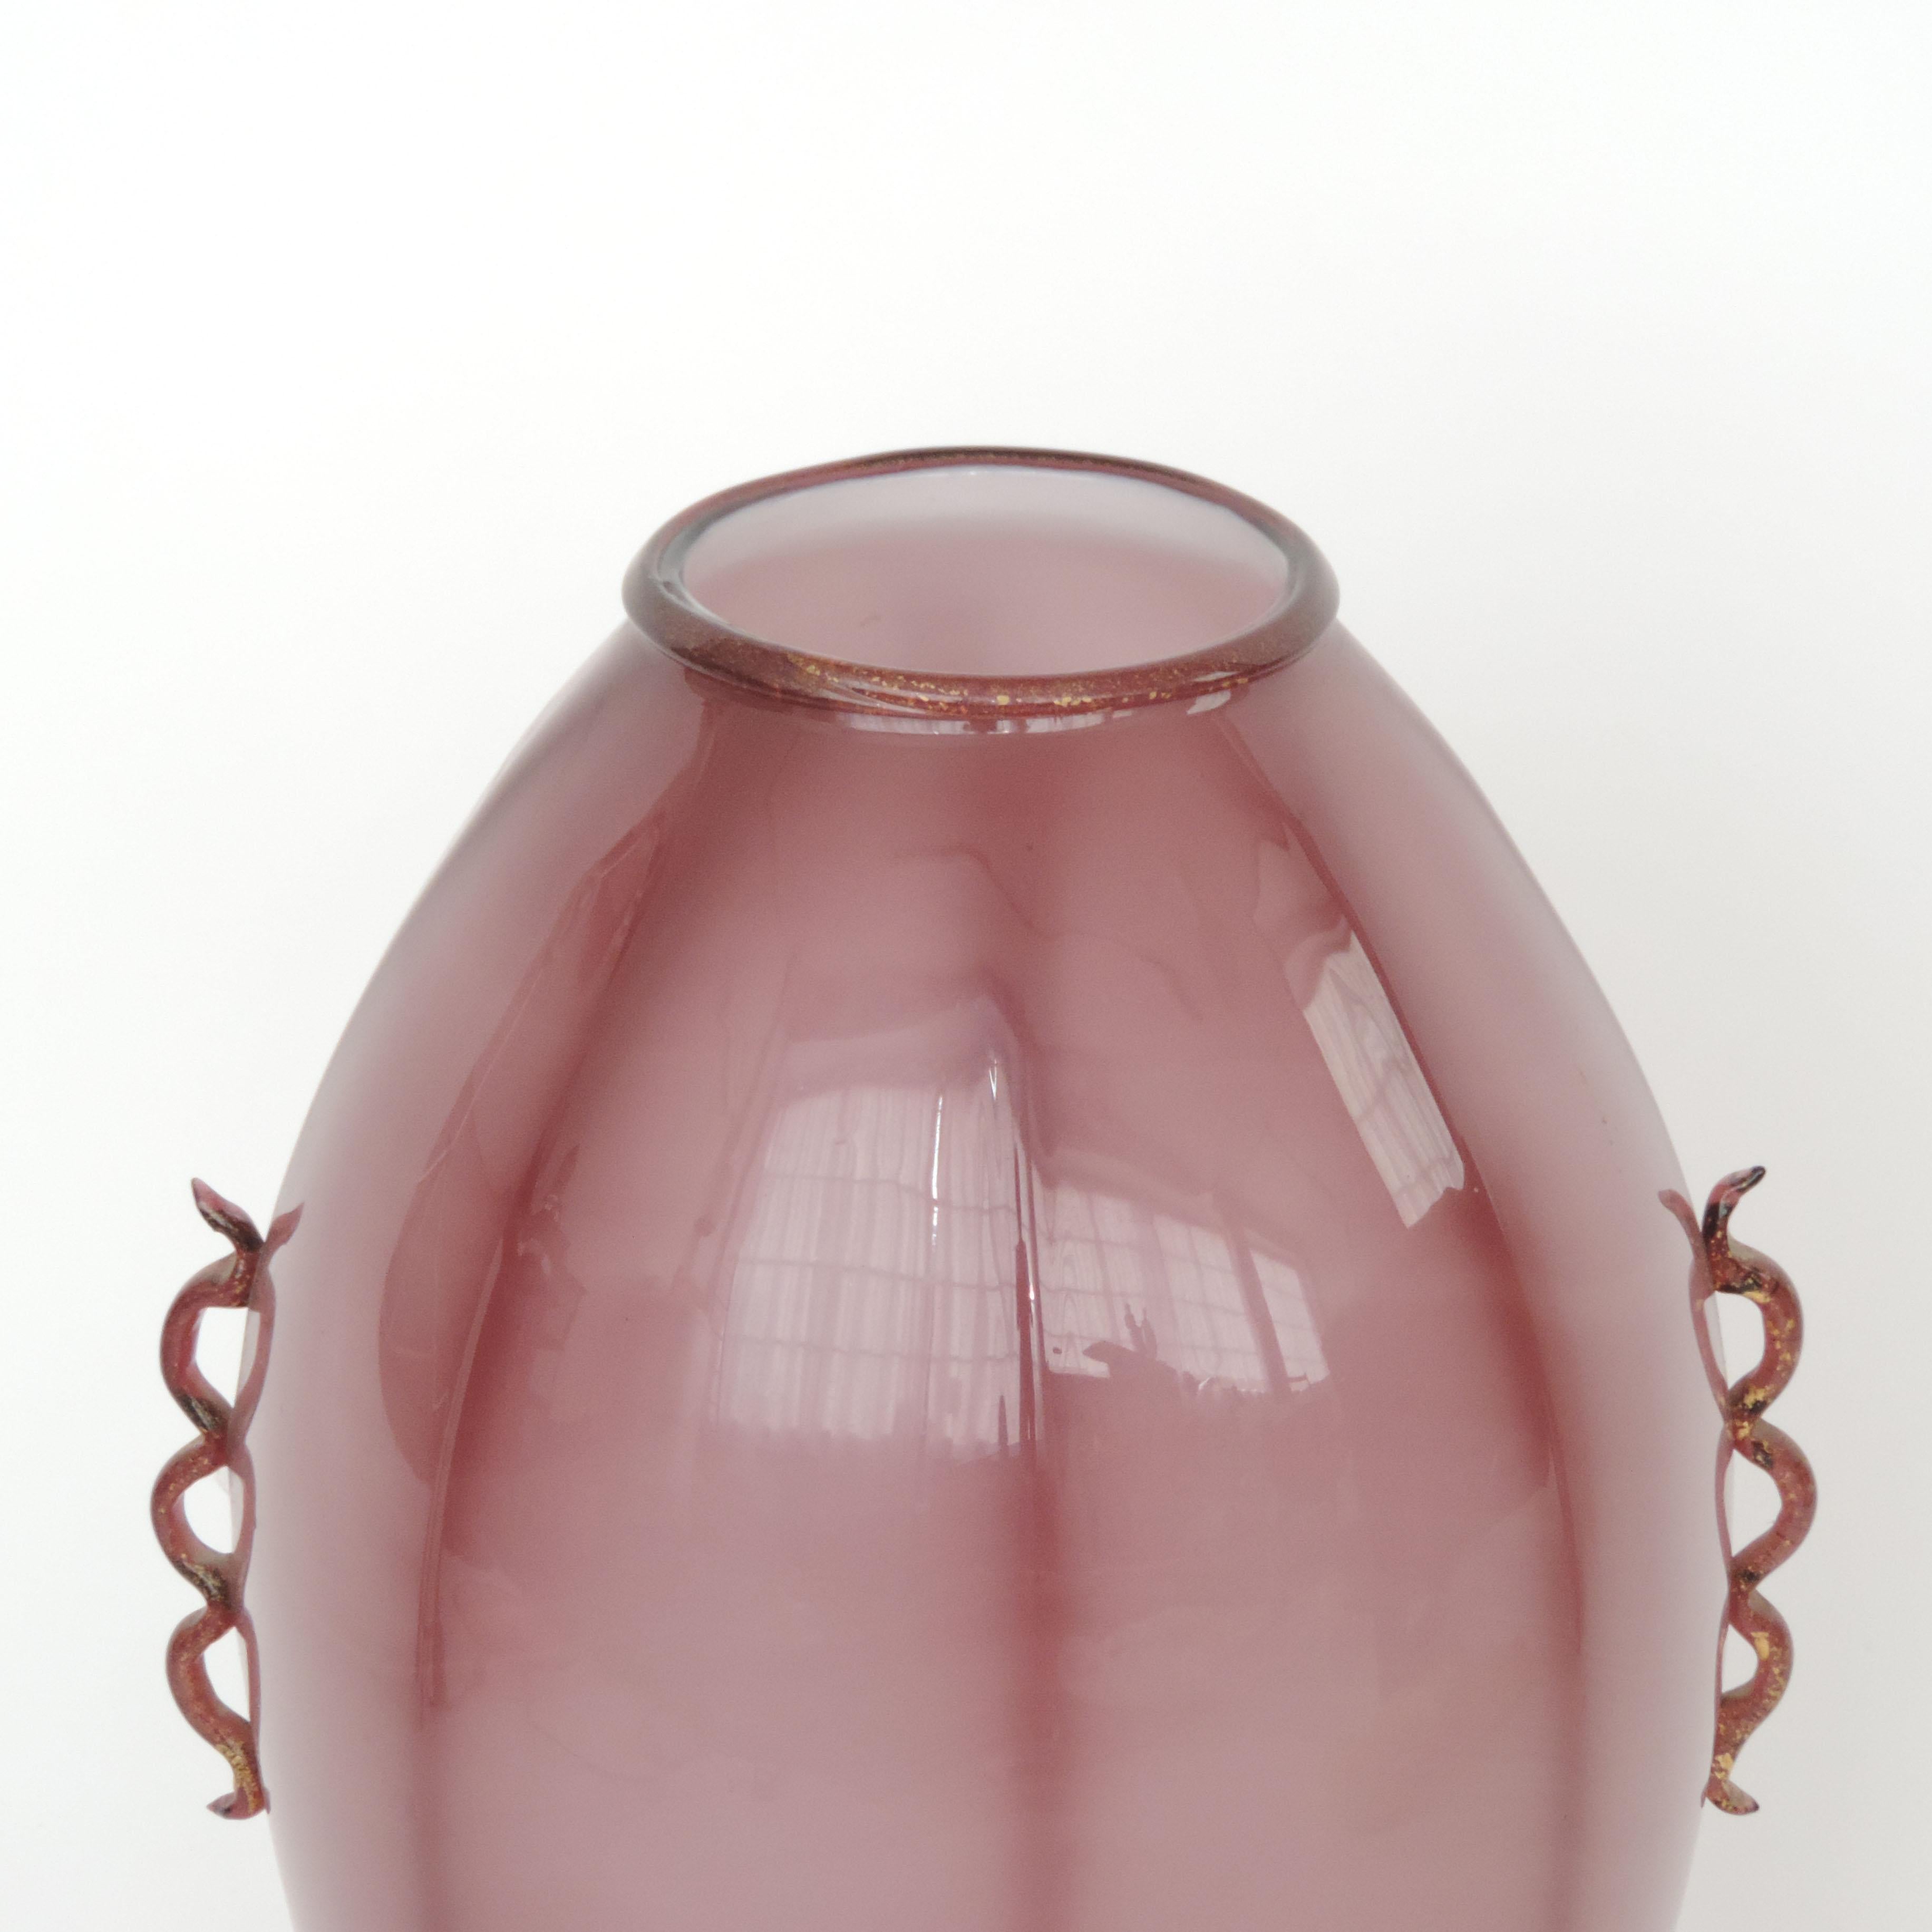 Gran jarrón italiano de cristal de Murano morado de los años 30, atribuido a Vittorio Zecchin.